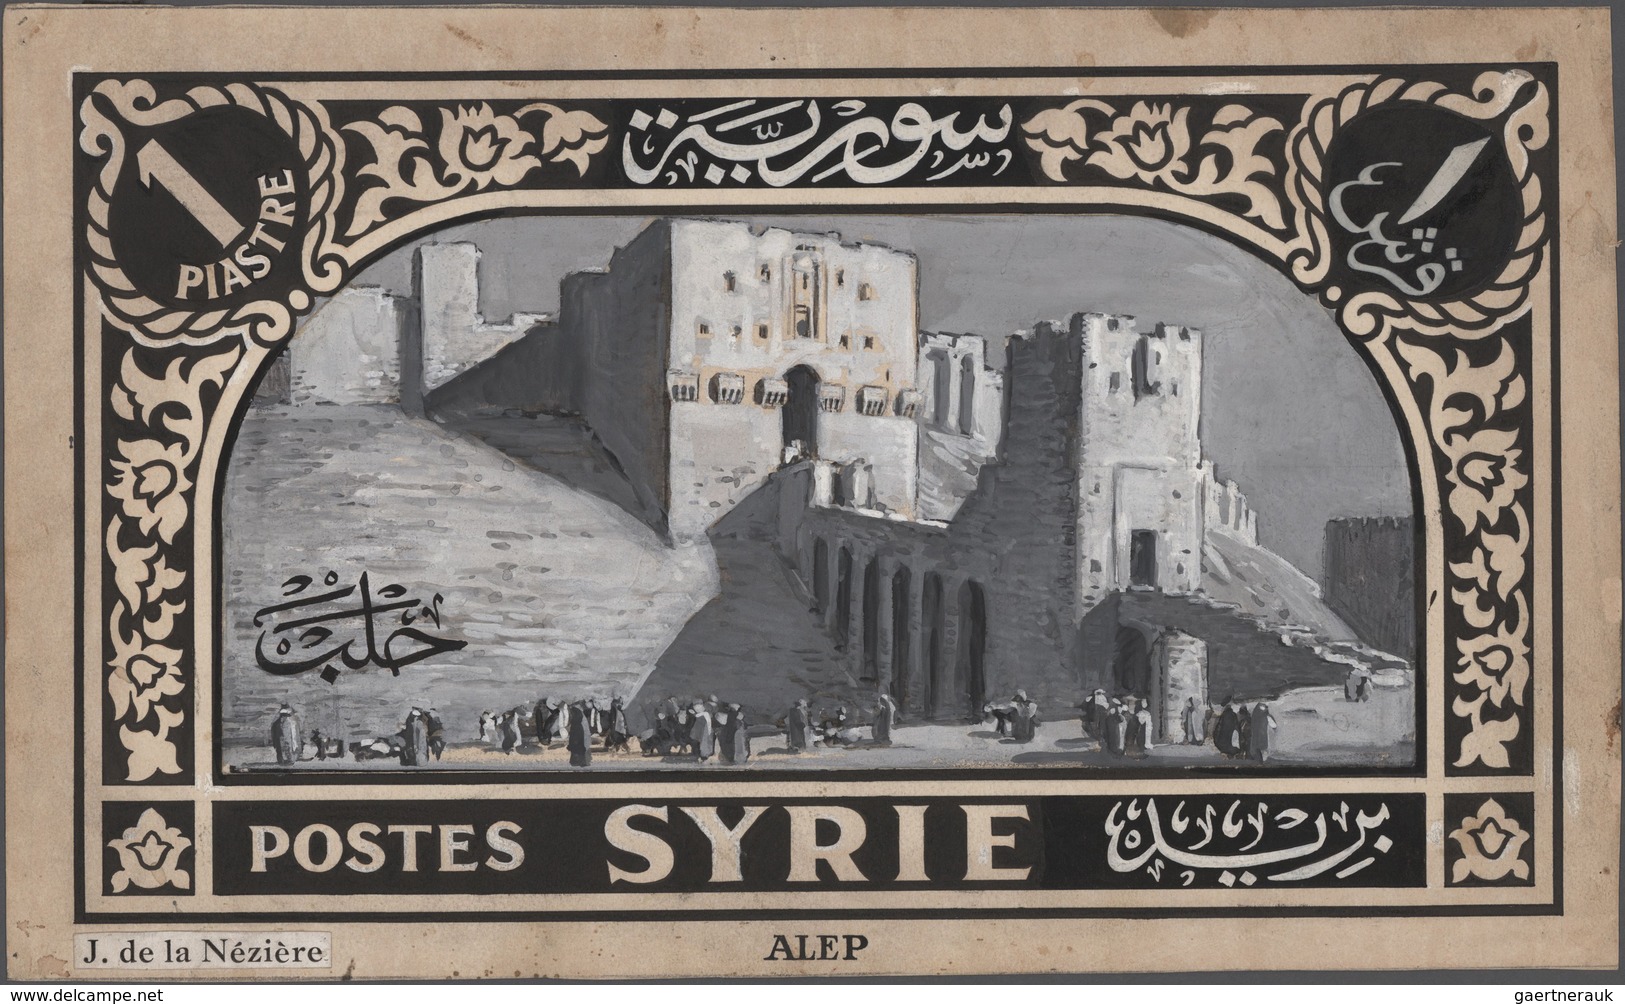 Syrien: 1925/1934, Definitives "Pictorials", designer "Jean de la Neziere", group of 15 large-sized